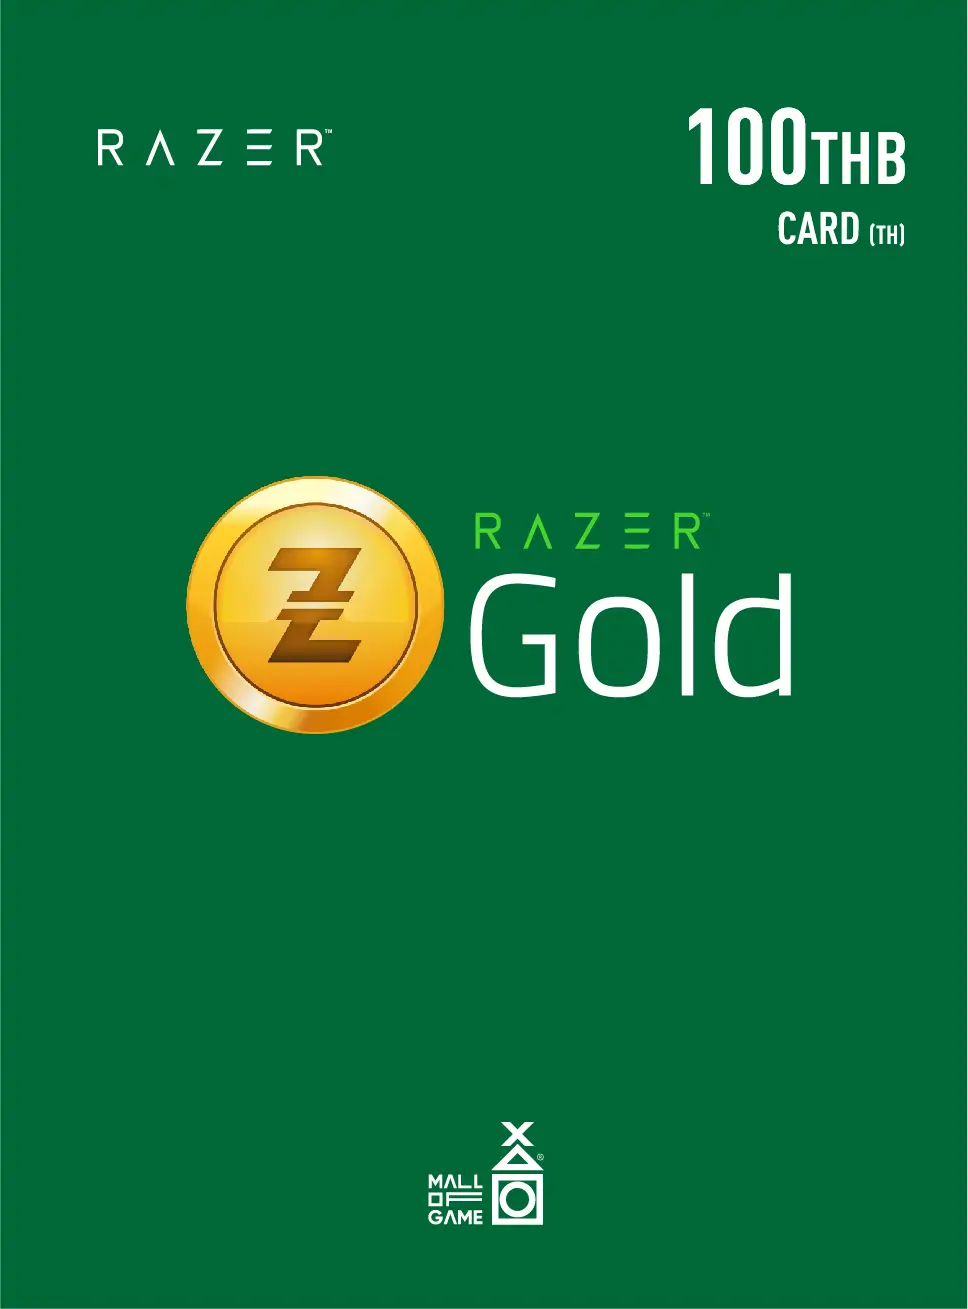 Razer Gold THB100 (TH)